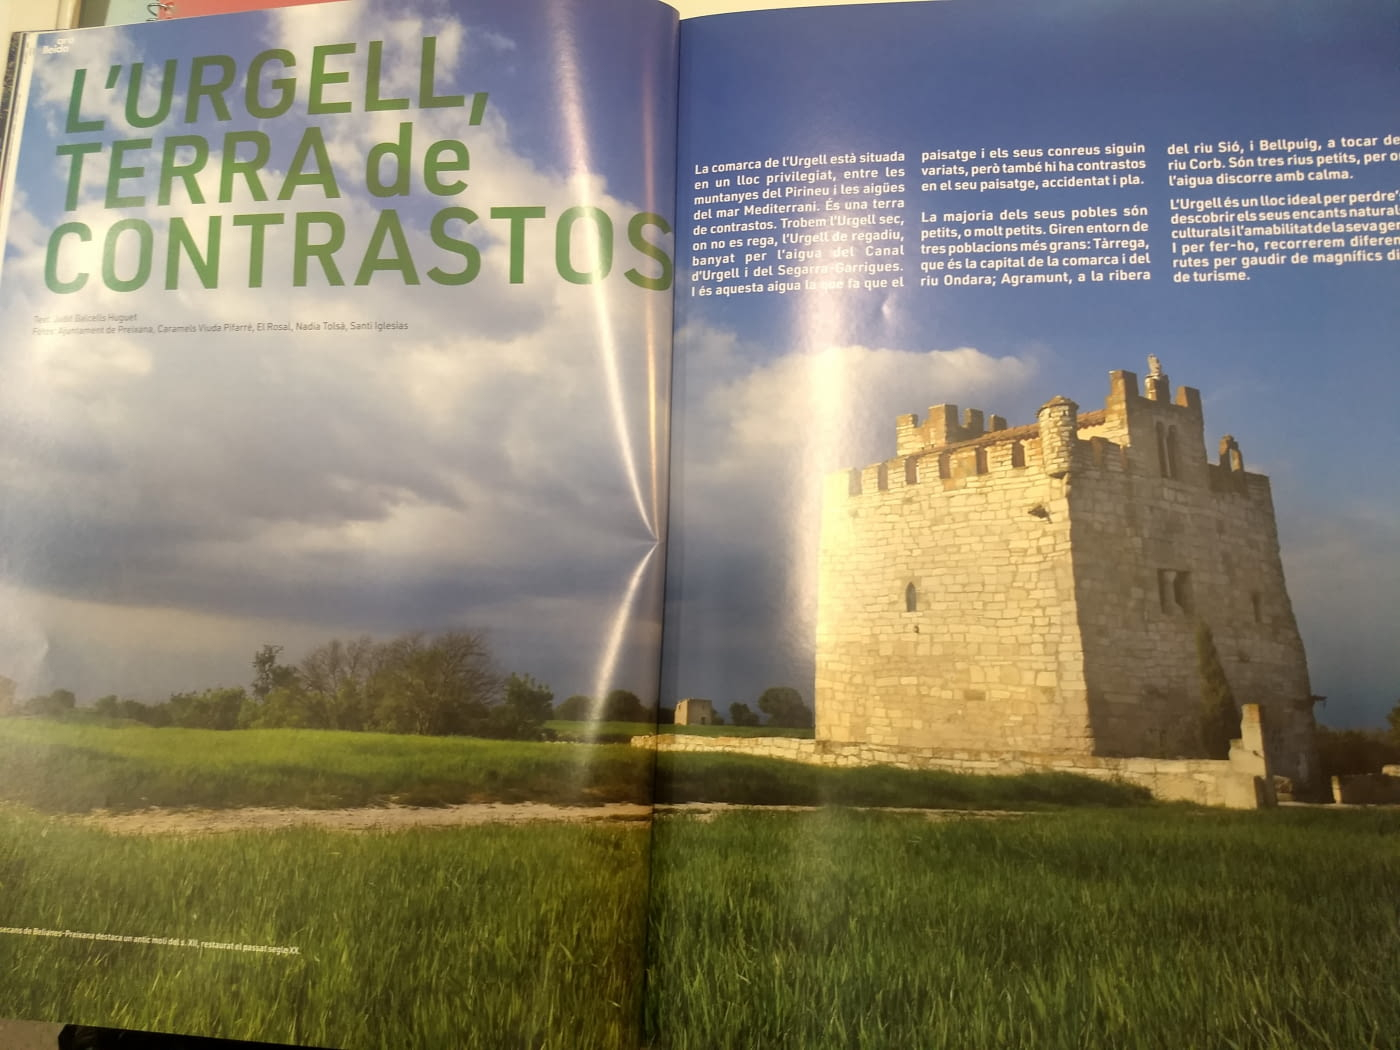 L'Urgell, terra de contrastos, a la revista Ara Lleida, juliol